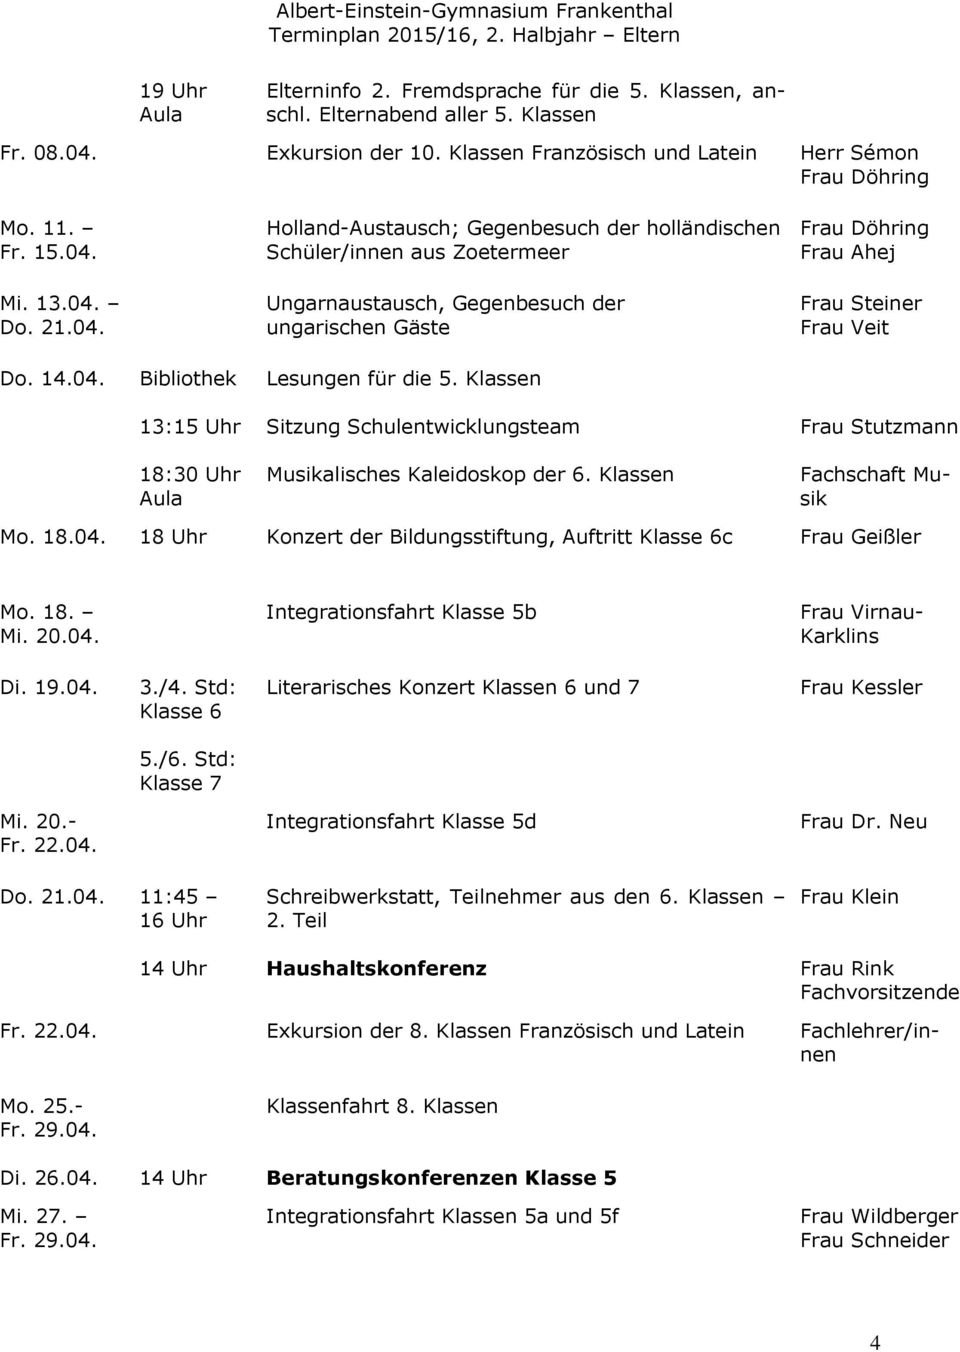 Klassen 13:15 Uhr 18:30 Uhr Sitzung Schulentwicklungsteam Musikalisches Kaleidoskop der 6. Klassen Frau Stutzmann Fachschaft Musik Mo. 18.04.